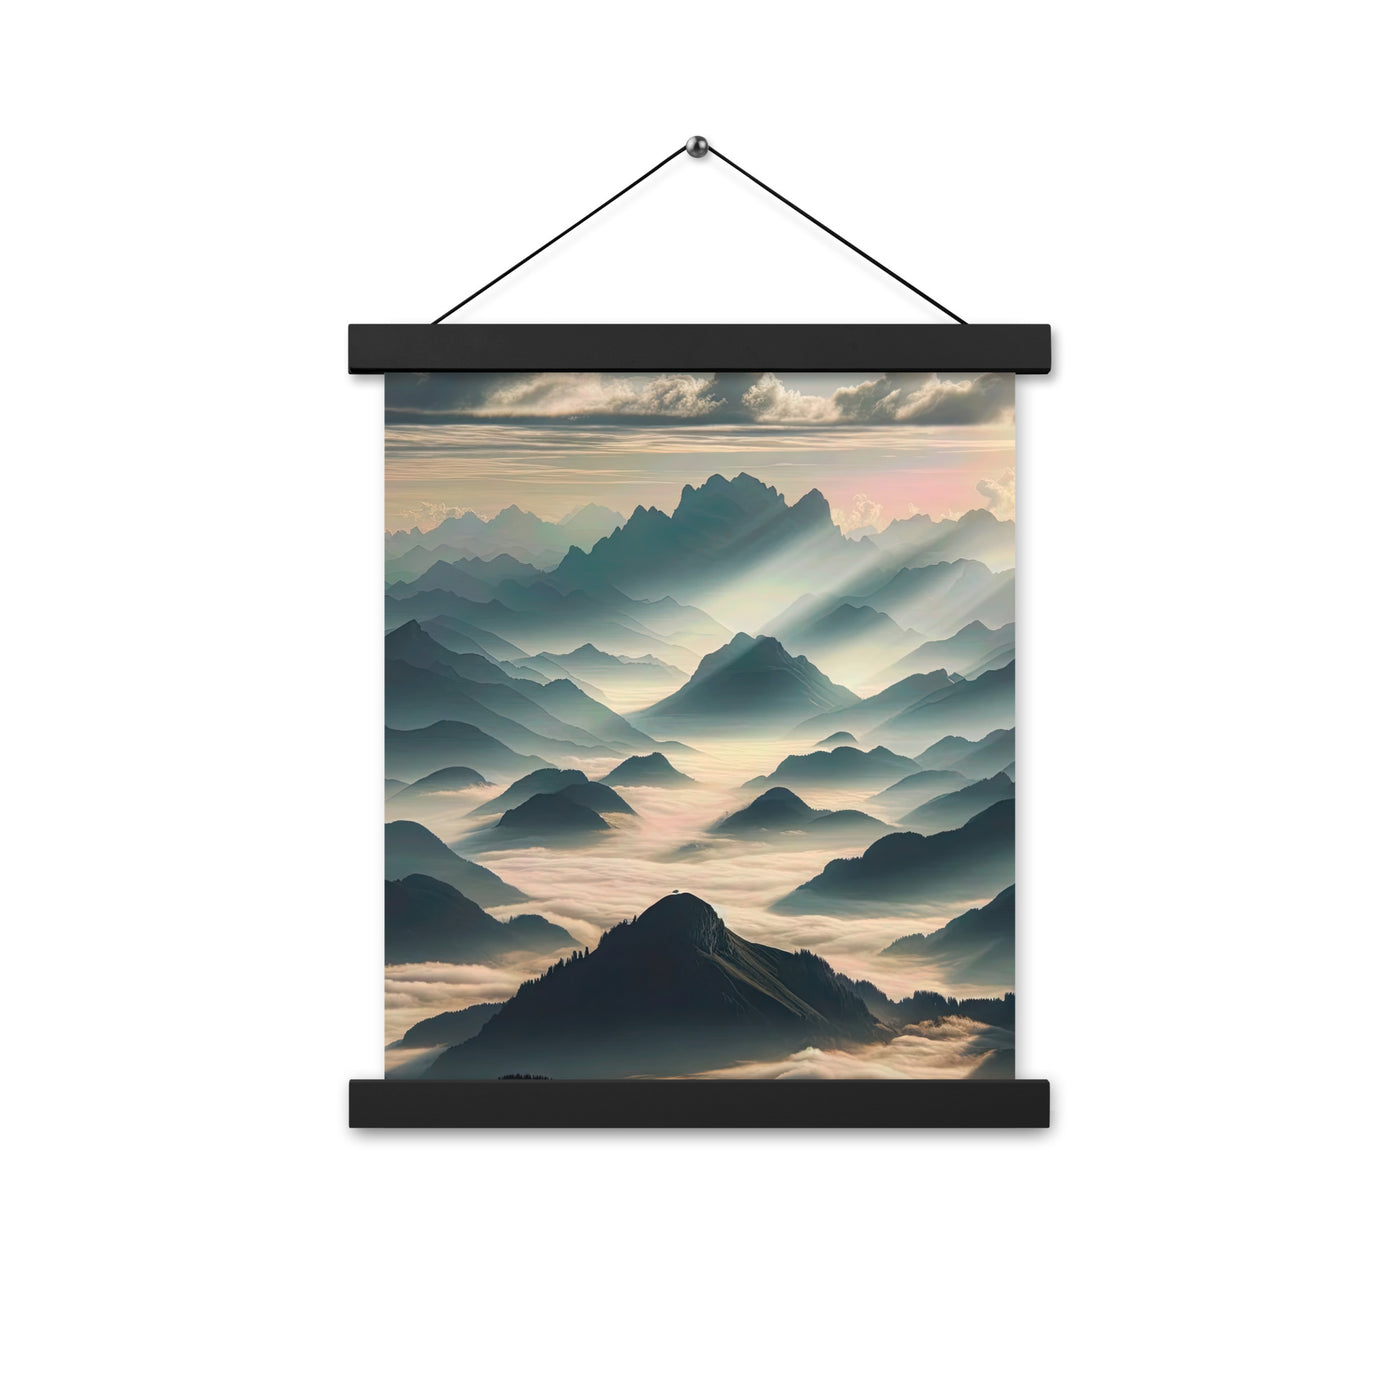 Foto der Alpen im Morgennebel, majestätische Gipfel ragen aus dem Nebel - Premium Poster mit Aufhängung berge xxx yyy zzz 27.9 x 35.6 cm